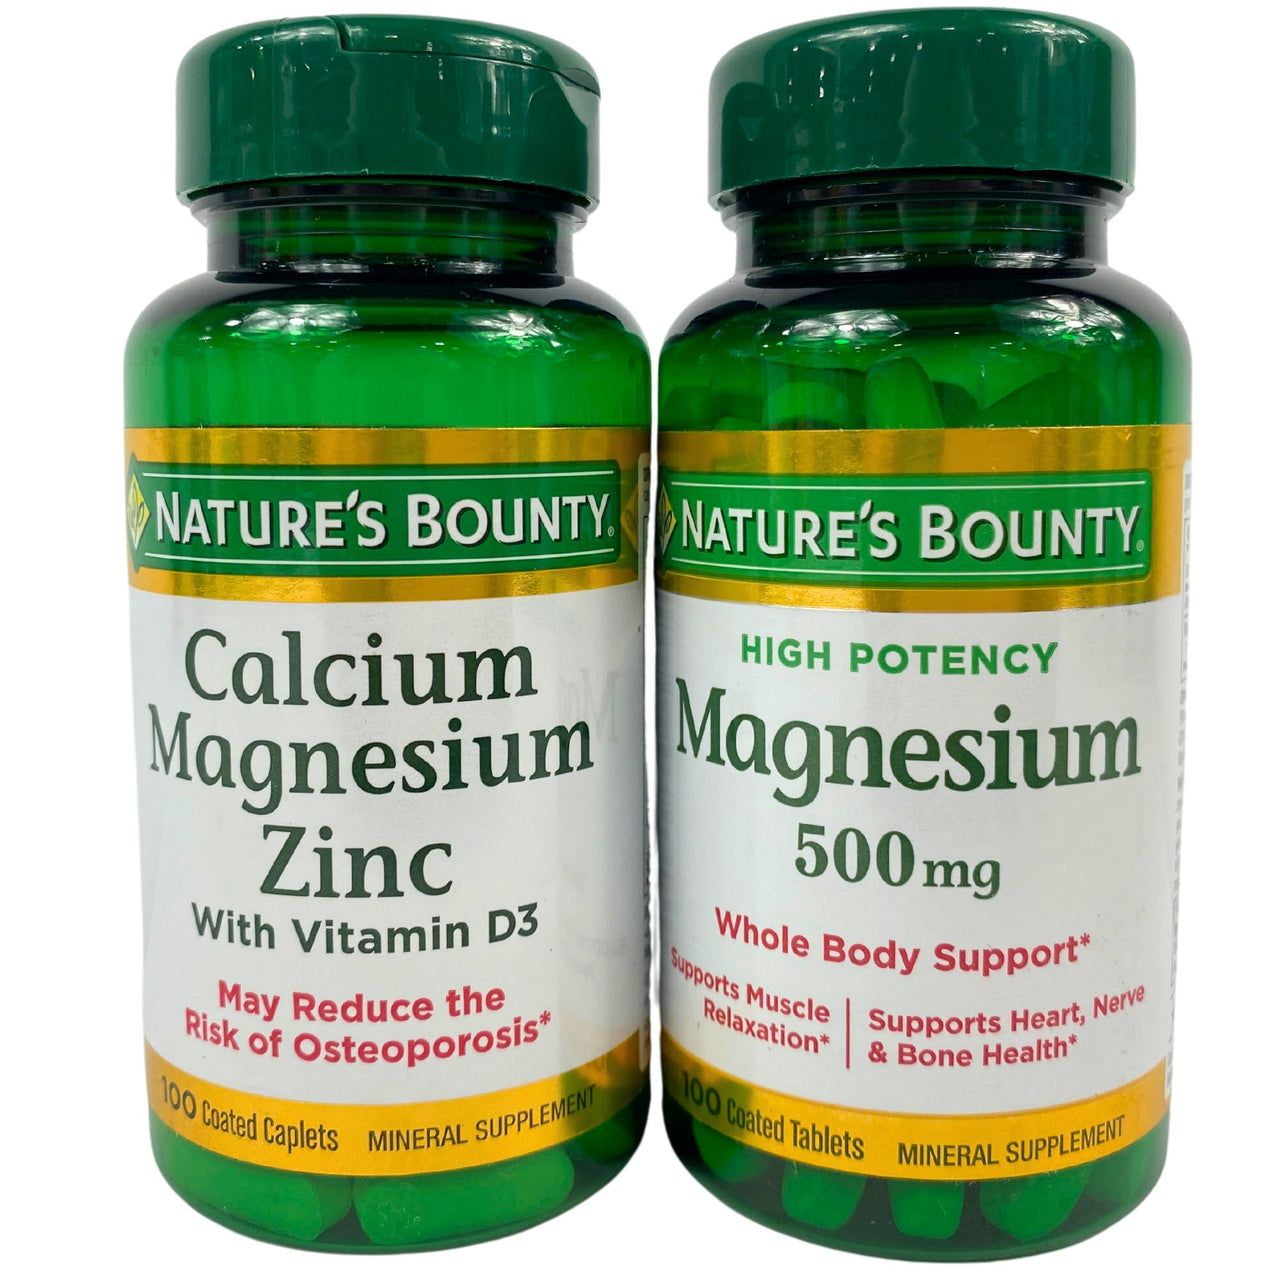 Nature's Bounty Calcium Magnesium Zinc (MAINLY) & Magnesium (LESS OF)